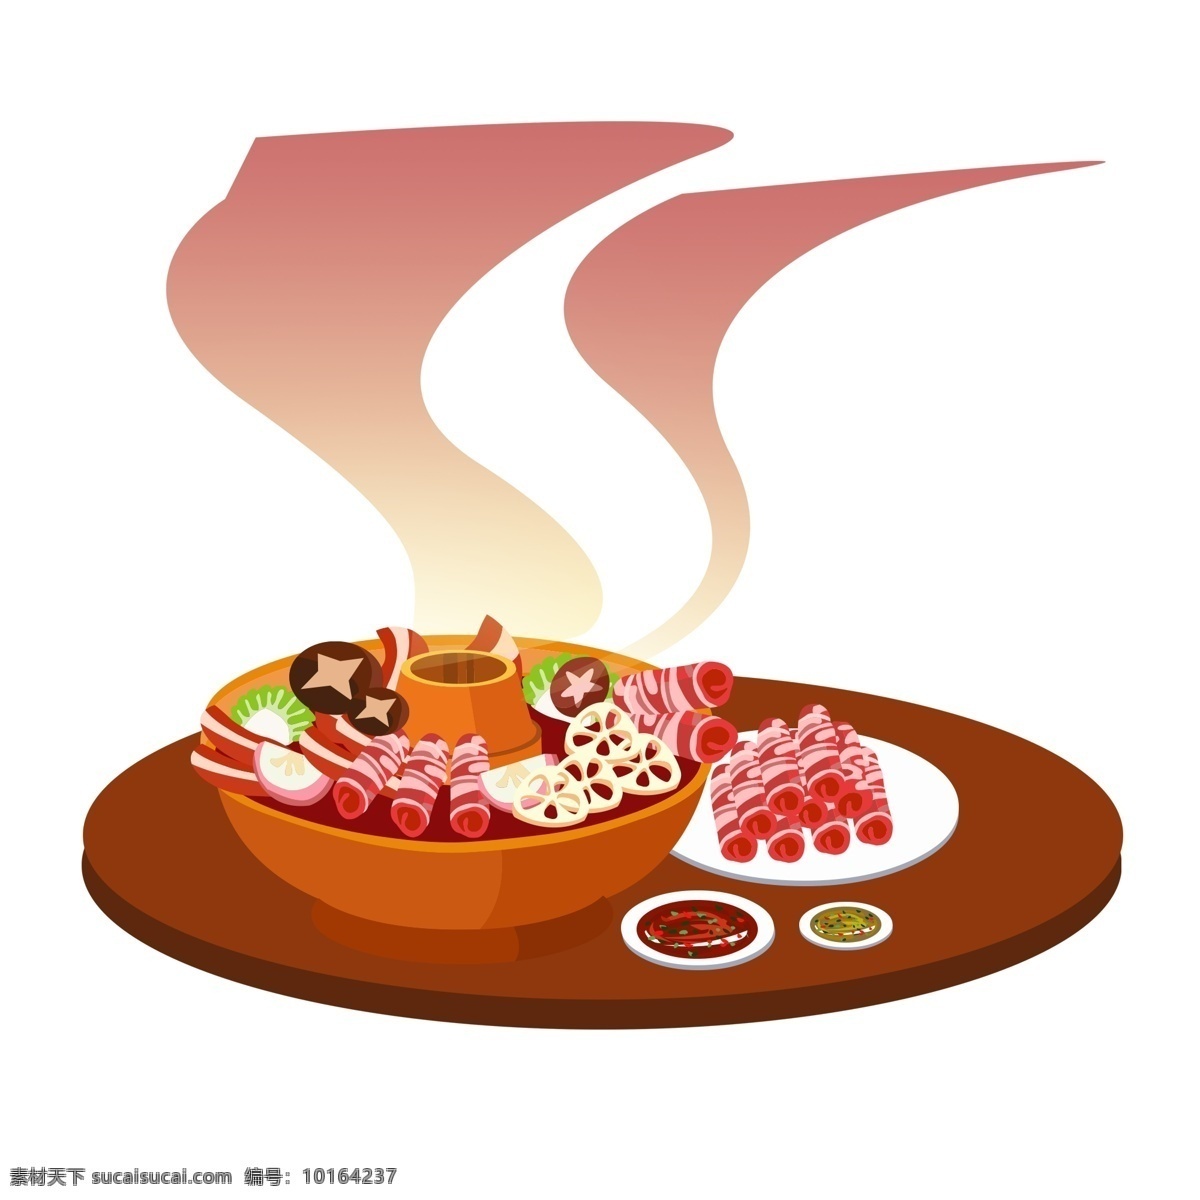 手绘 火锅 大餐 插画 元素 美食 食物